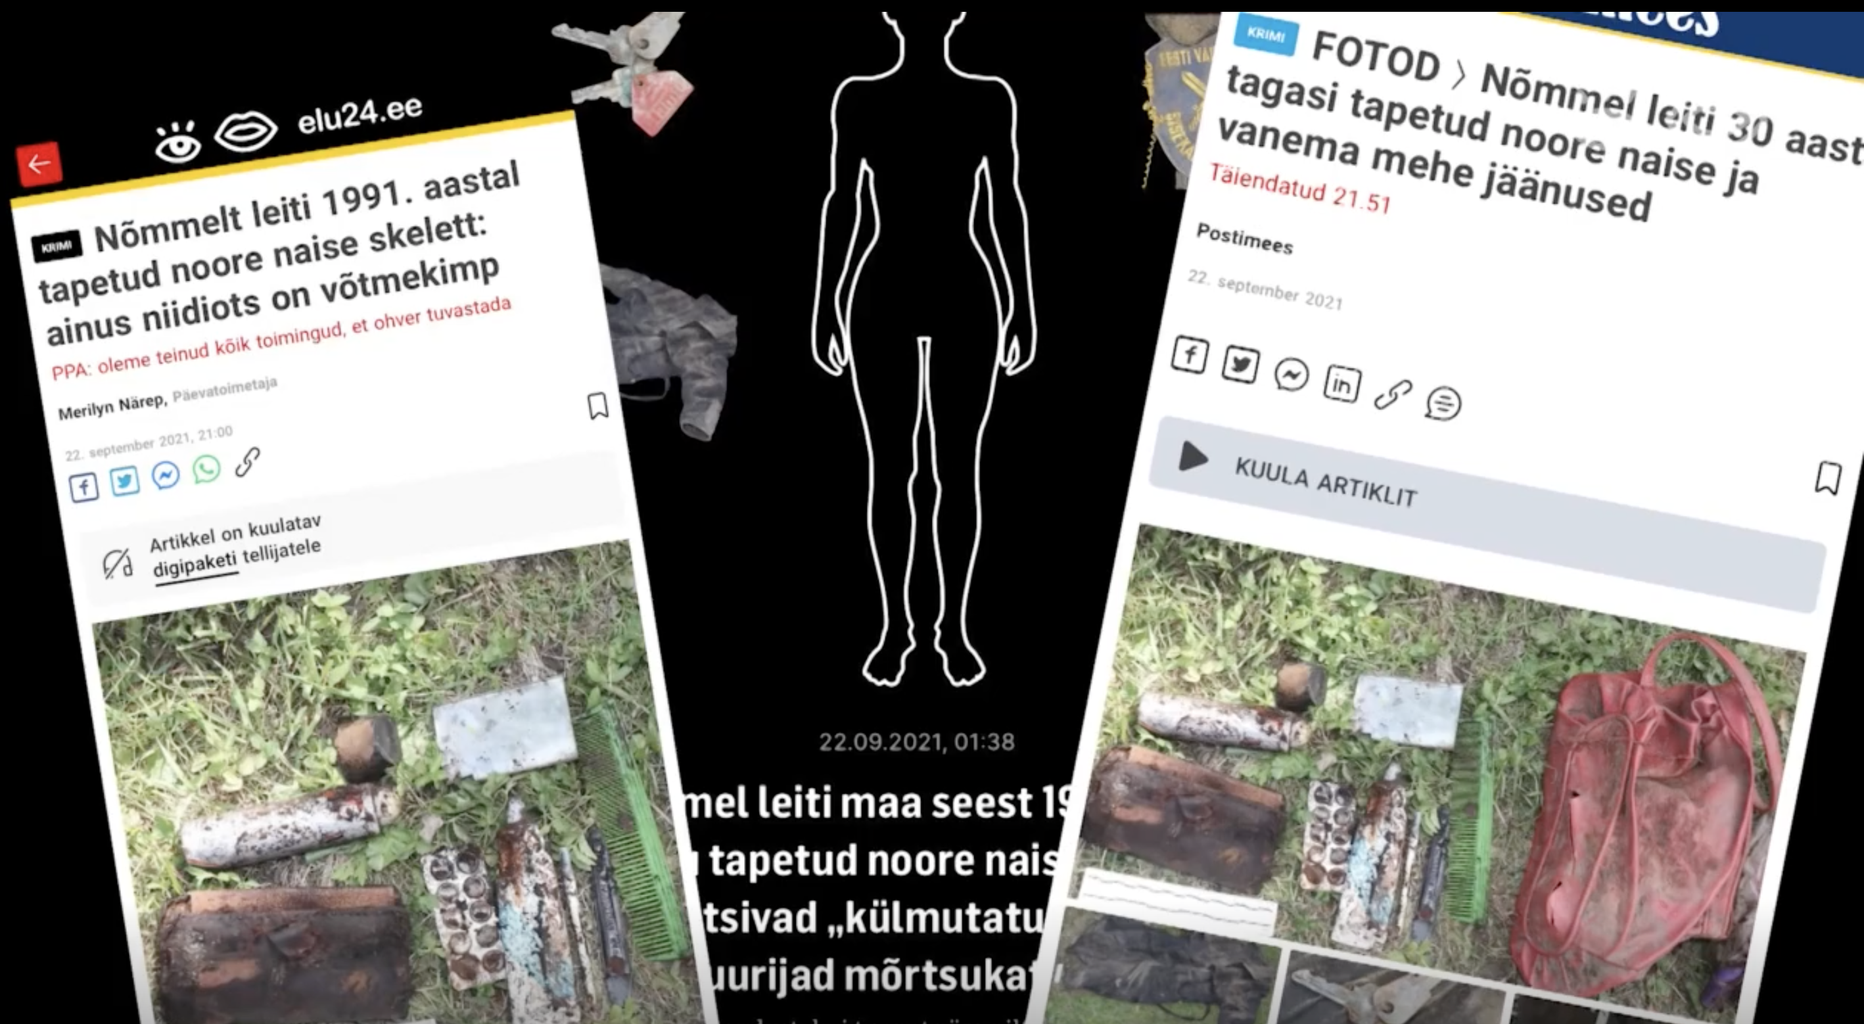 Руководитель криминального бюро о найденных в Таллинне человеческих скелетах: люди активно помогают нам в расследовании.